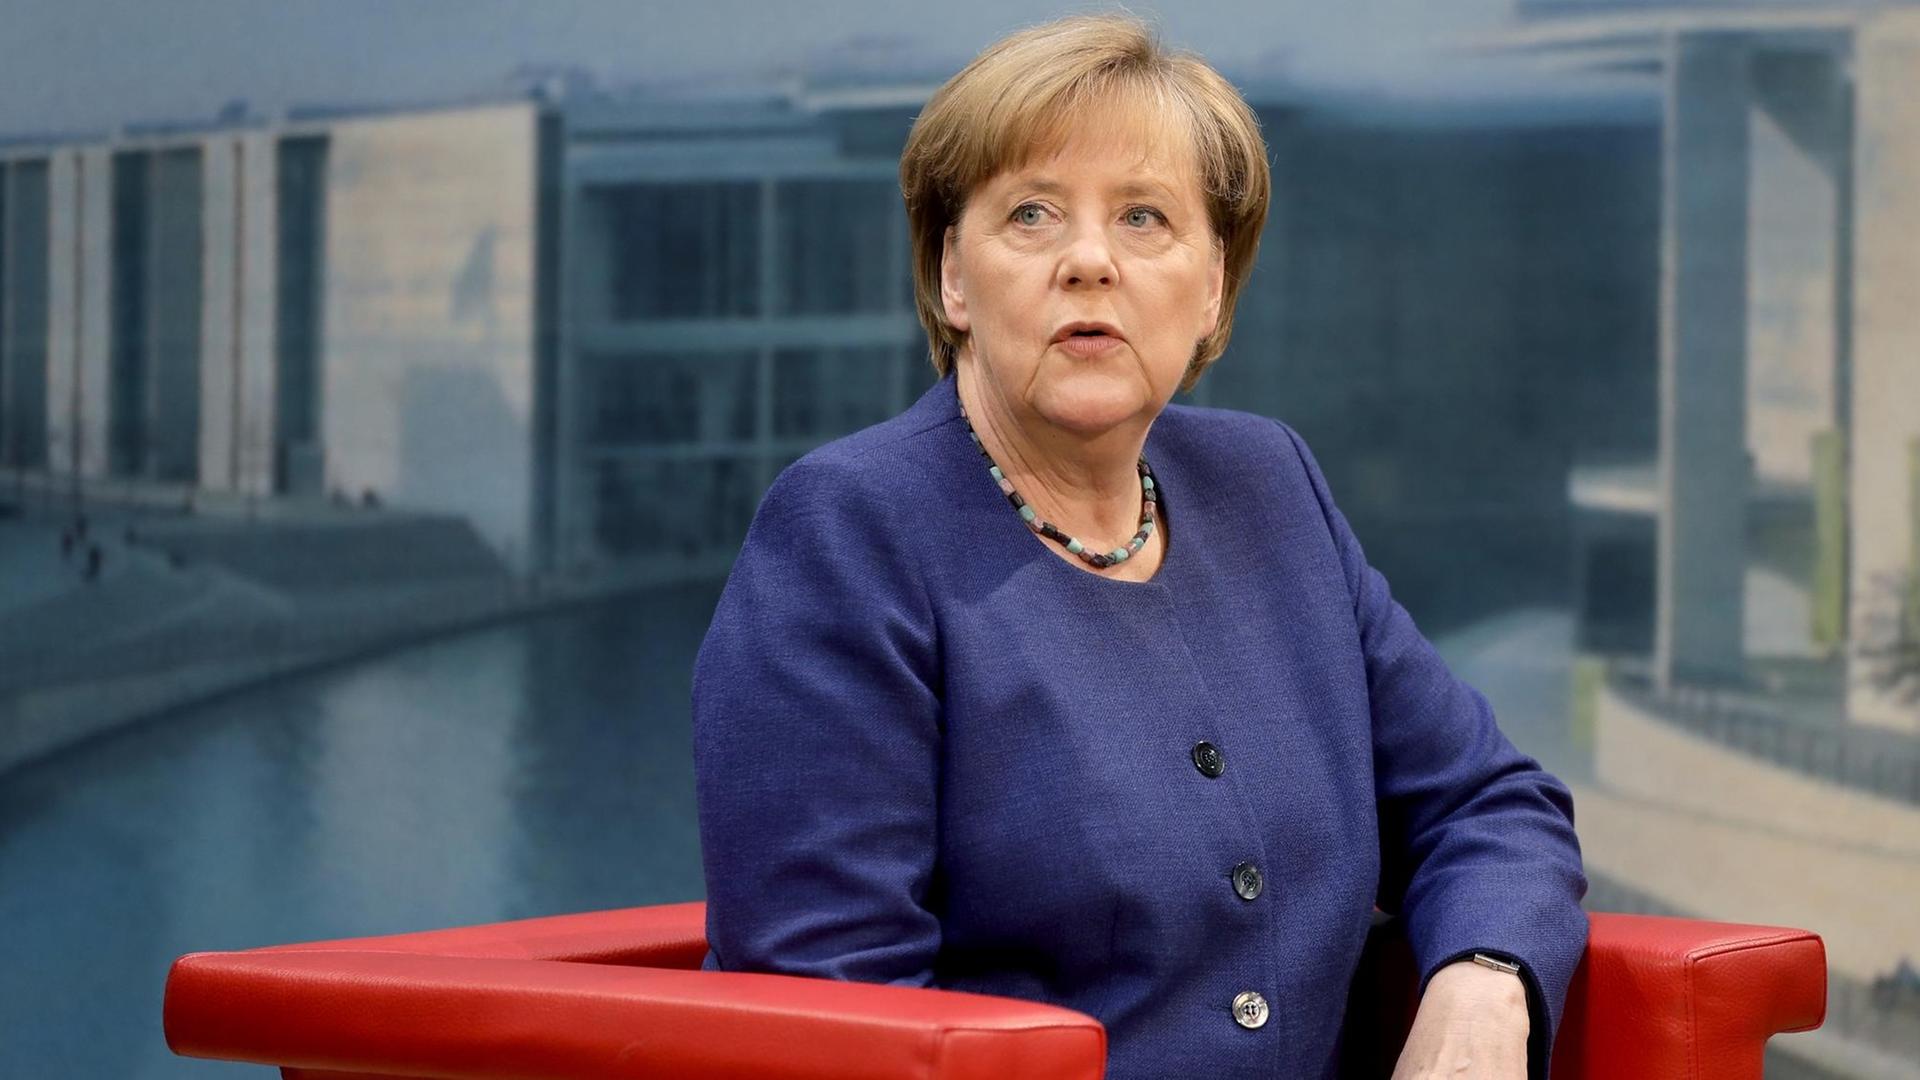 Bundeskanzlerin Angela Merkel während des ARD-Sommerinterviews in Berlin.